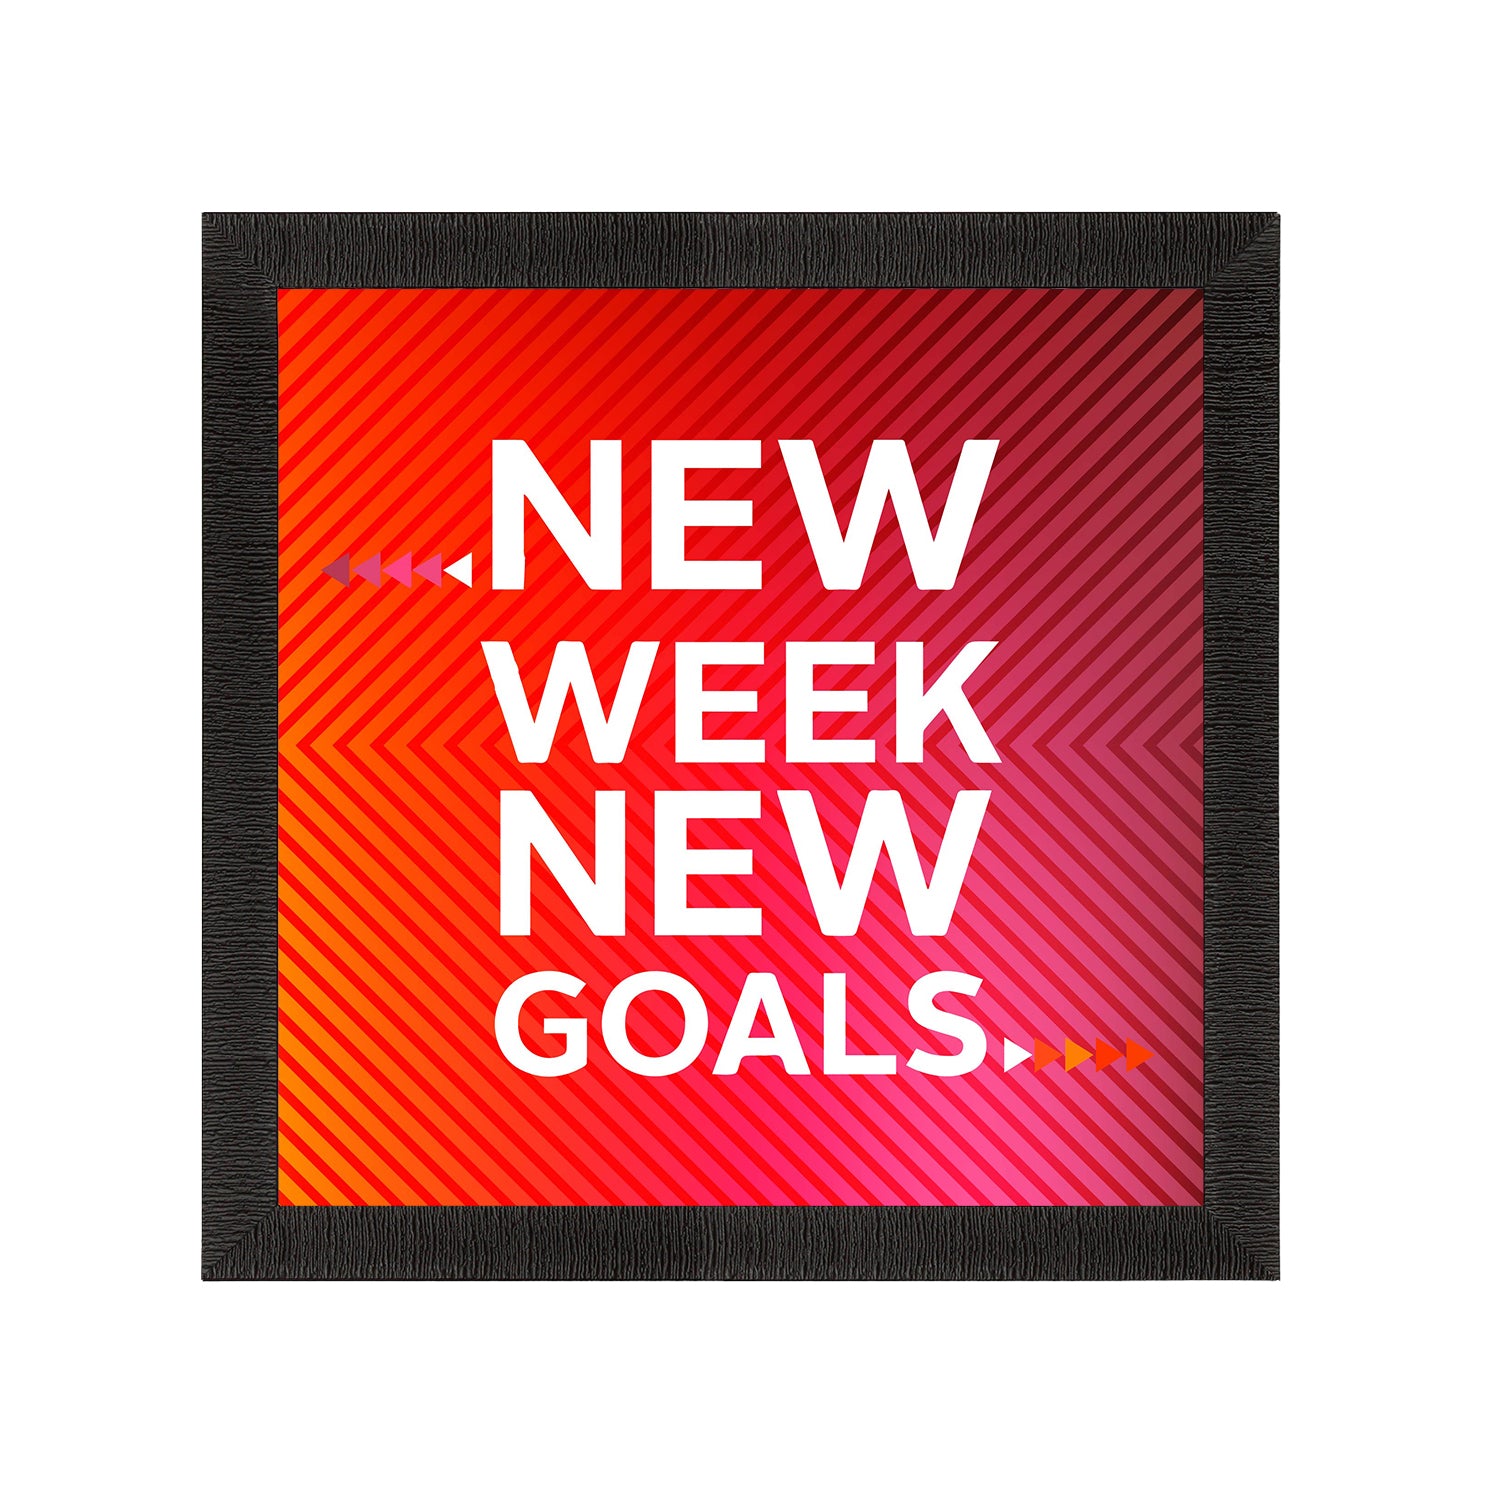 "New Week New Goals" Motivational Quote Satin Matt Texture UV Art Painting